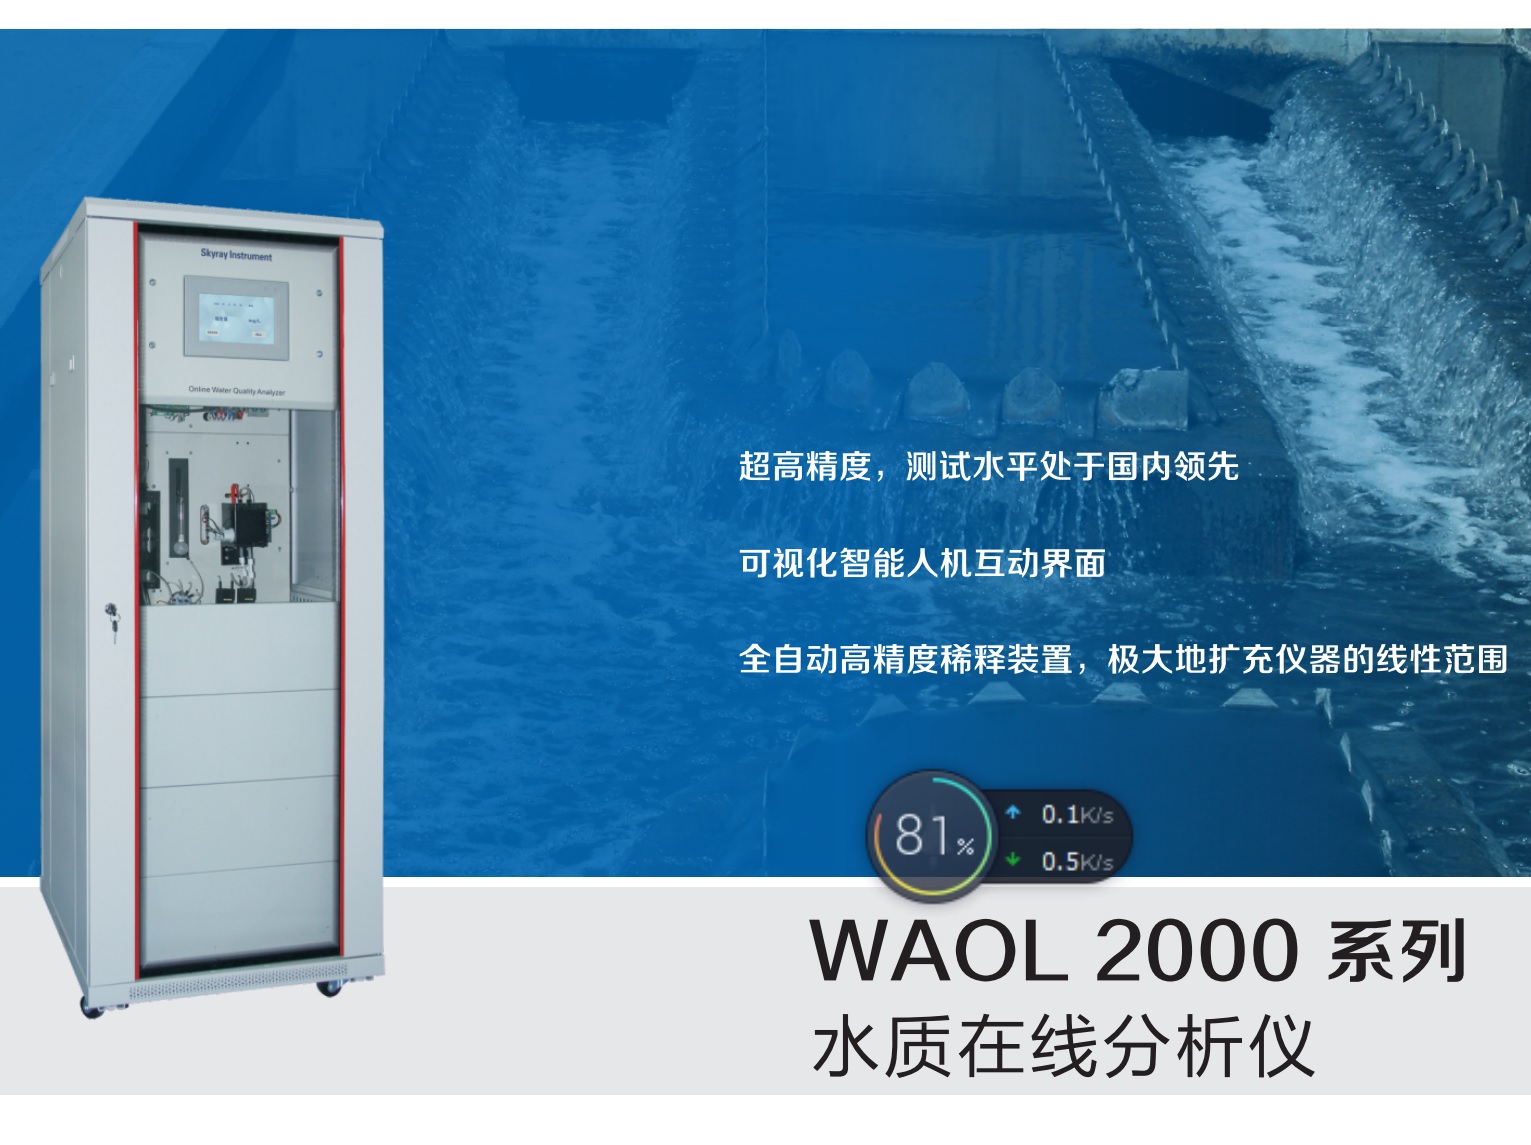 江苏天瑞仪器股份有限公司-电镀重金属WAOL 2000 水质在线分析